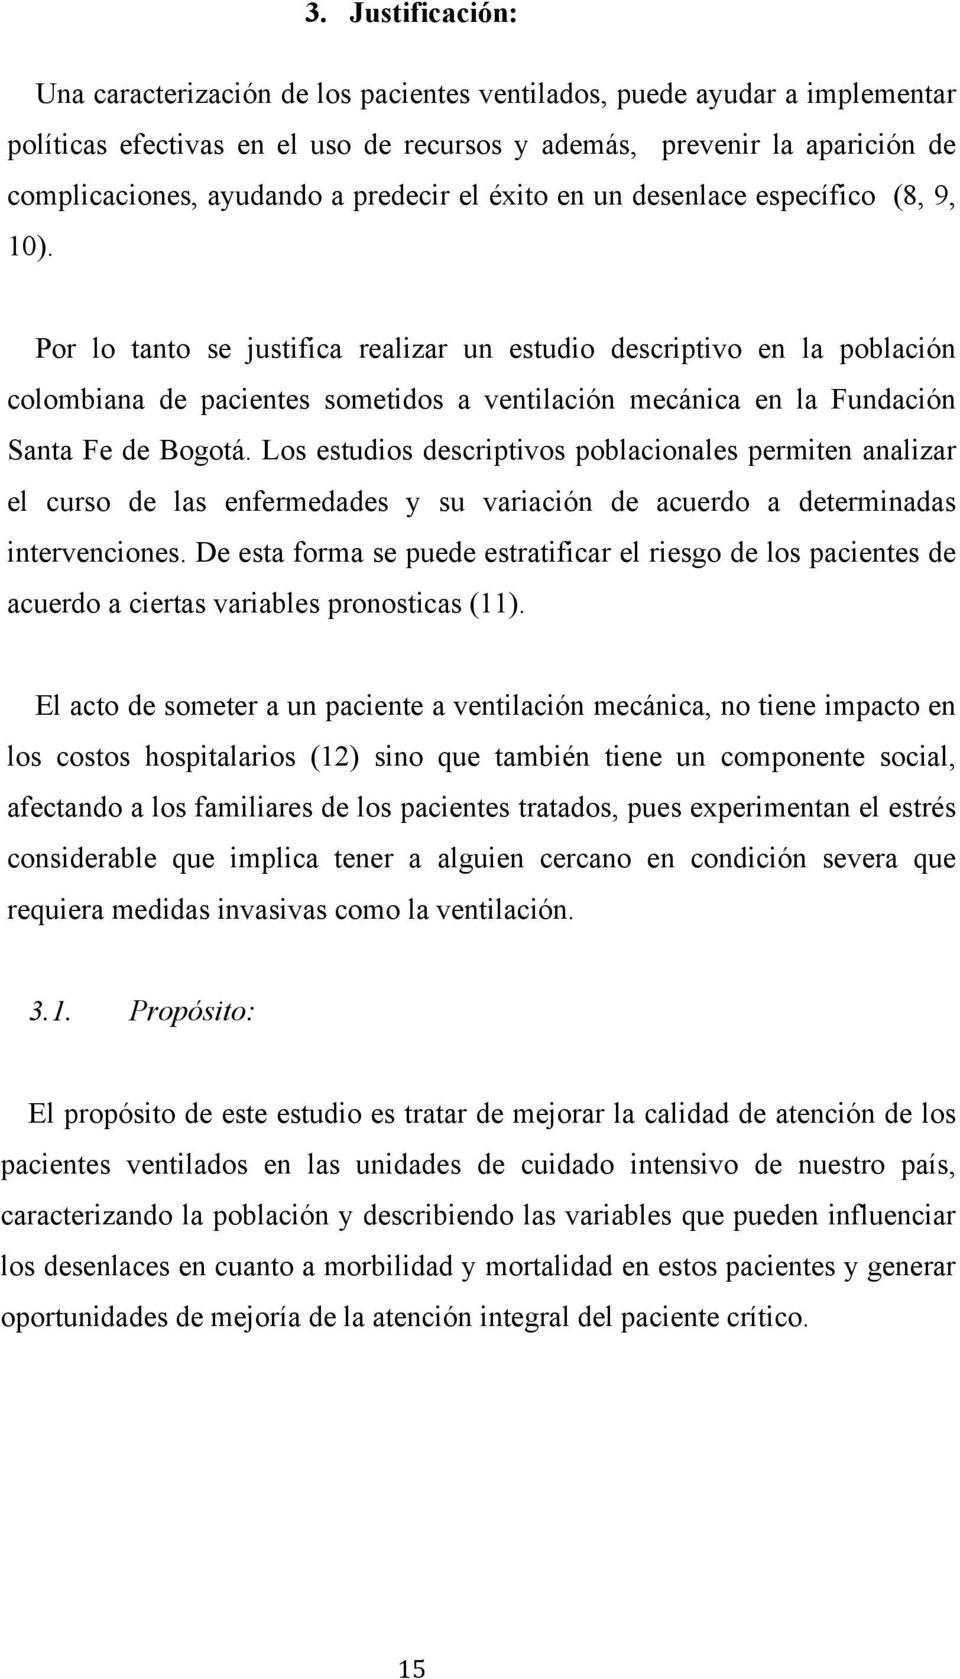 Por lo tanto se justifica realizar un estudio descriptivo en la población colombiana de pacientes sometidos a ventilación mecánica en la Fundación Santa Fe de Bogotá.